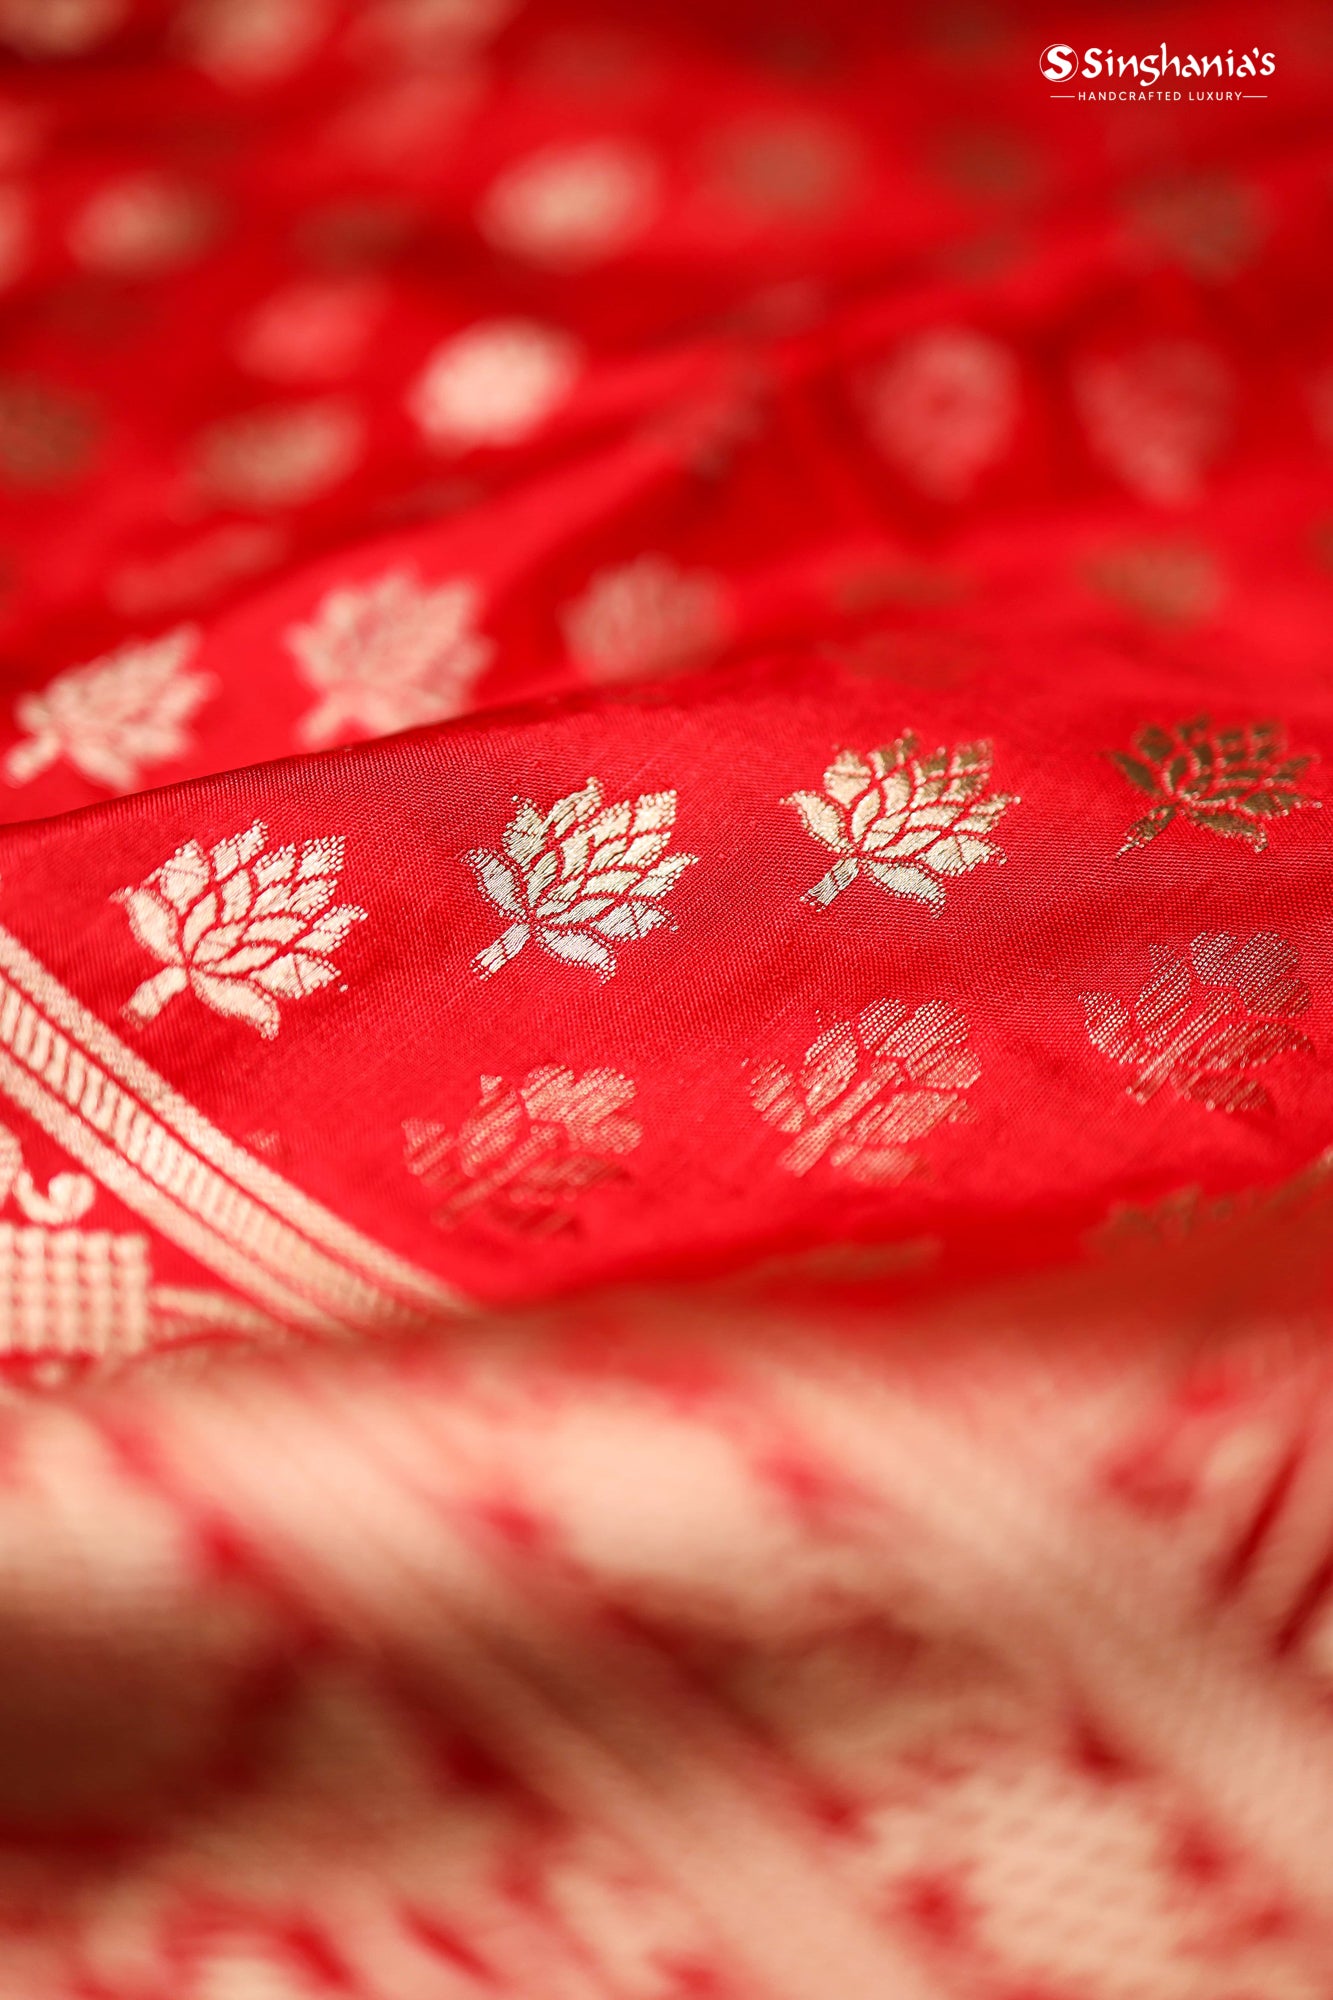 Vibrant Red Banarasi Silk Handloom Saree With Floral Buttis